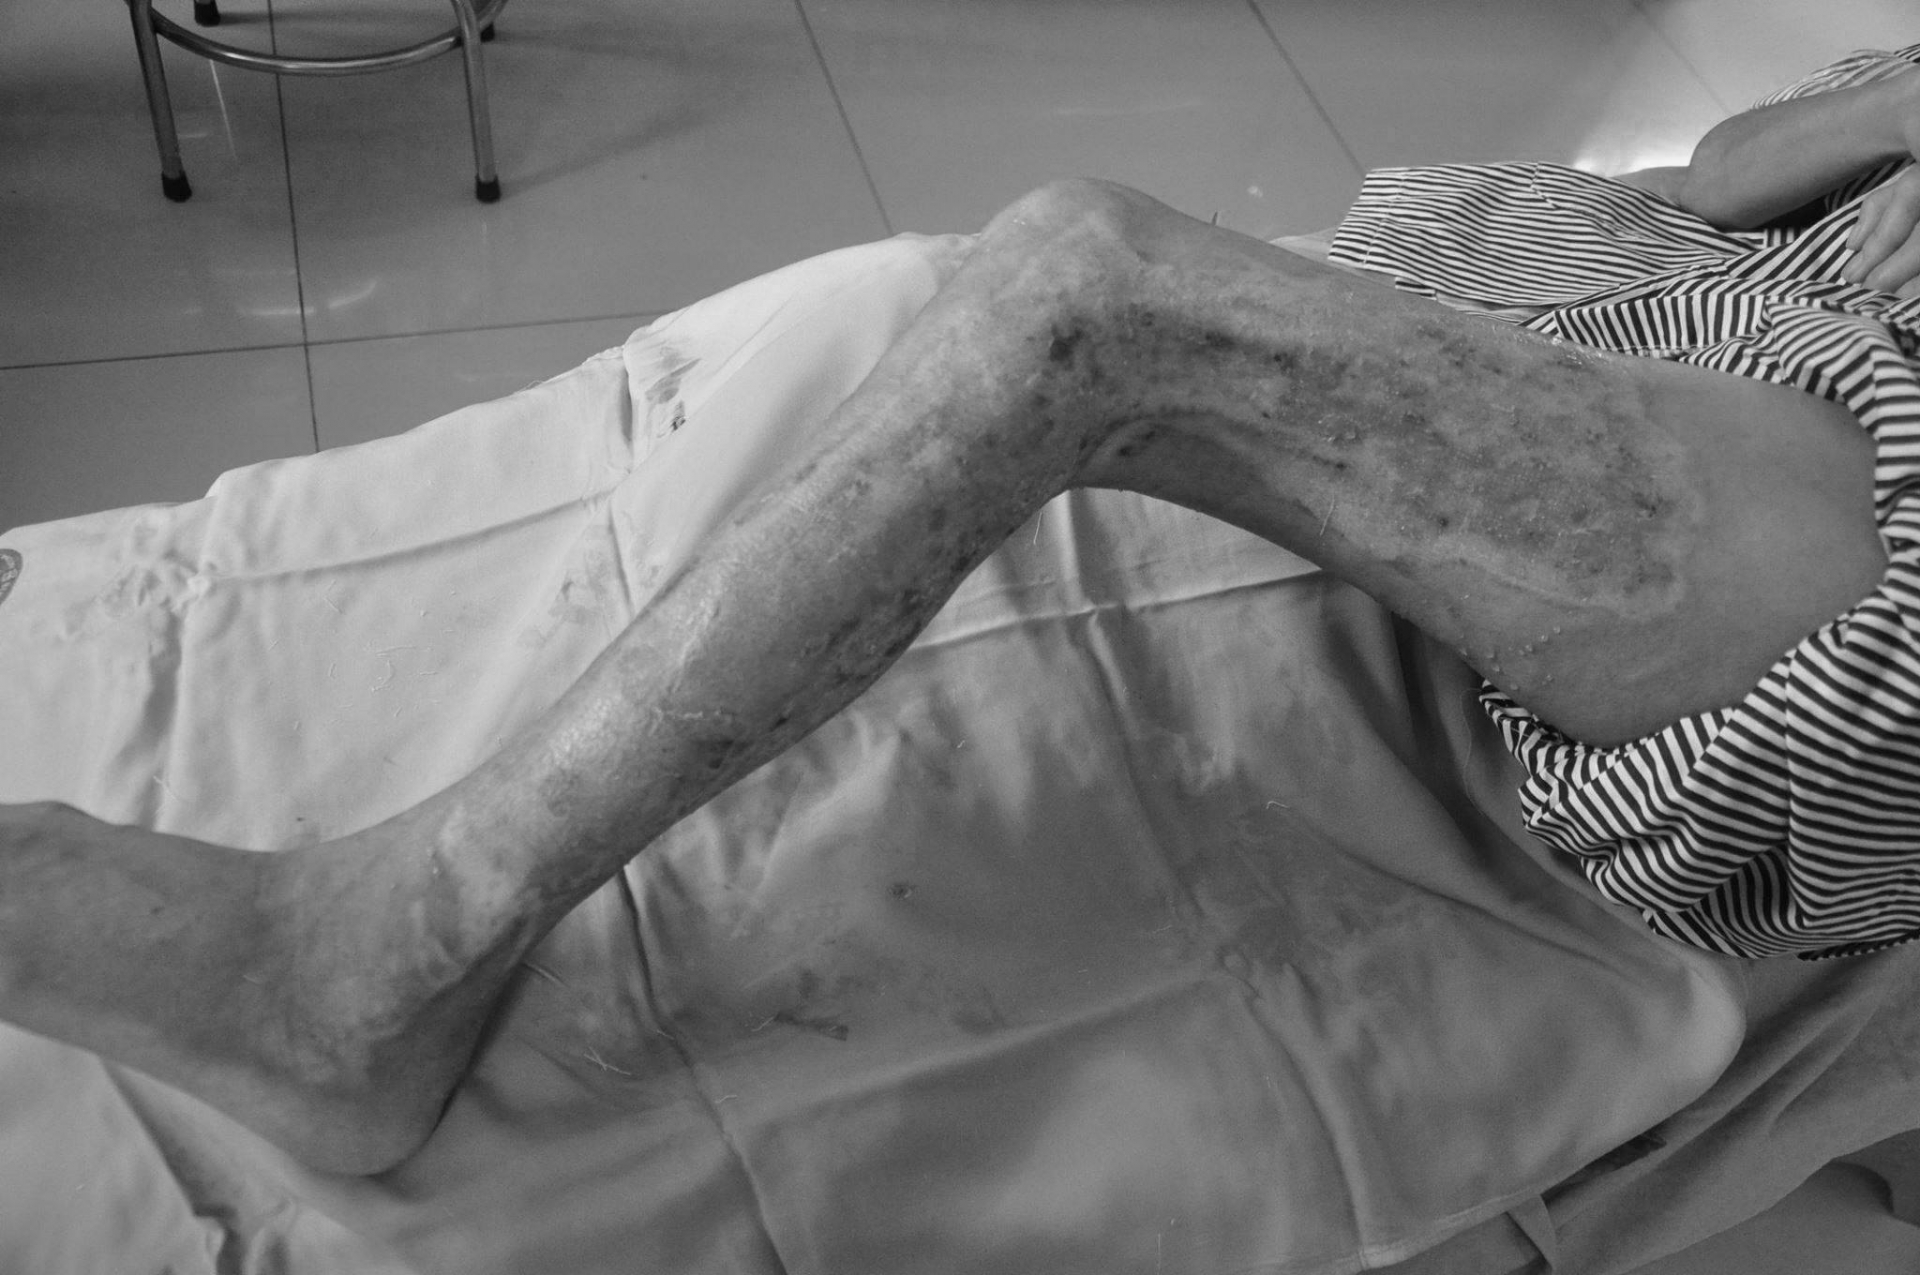 Bệnh nhân bị bỏng nặng do ngâm chân nước nóng, đắp lá cây chữa bệnh đái tháo đường